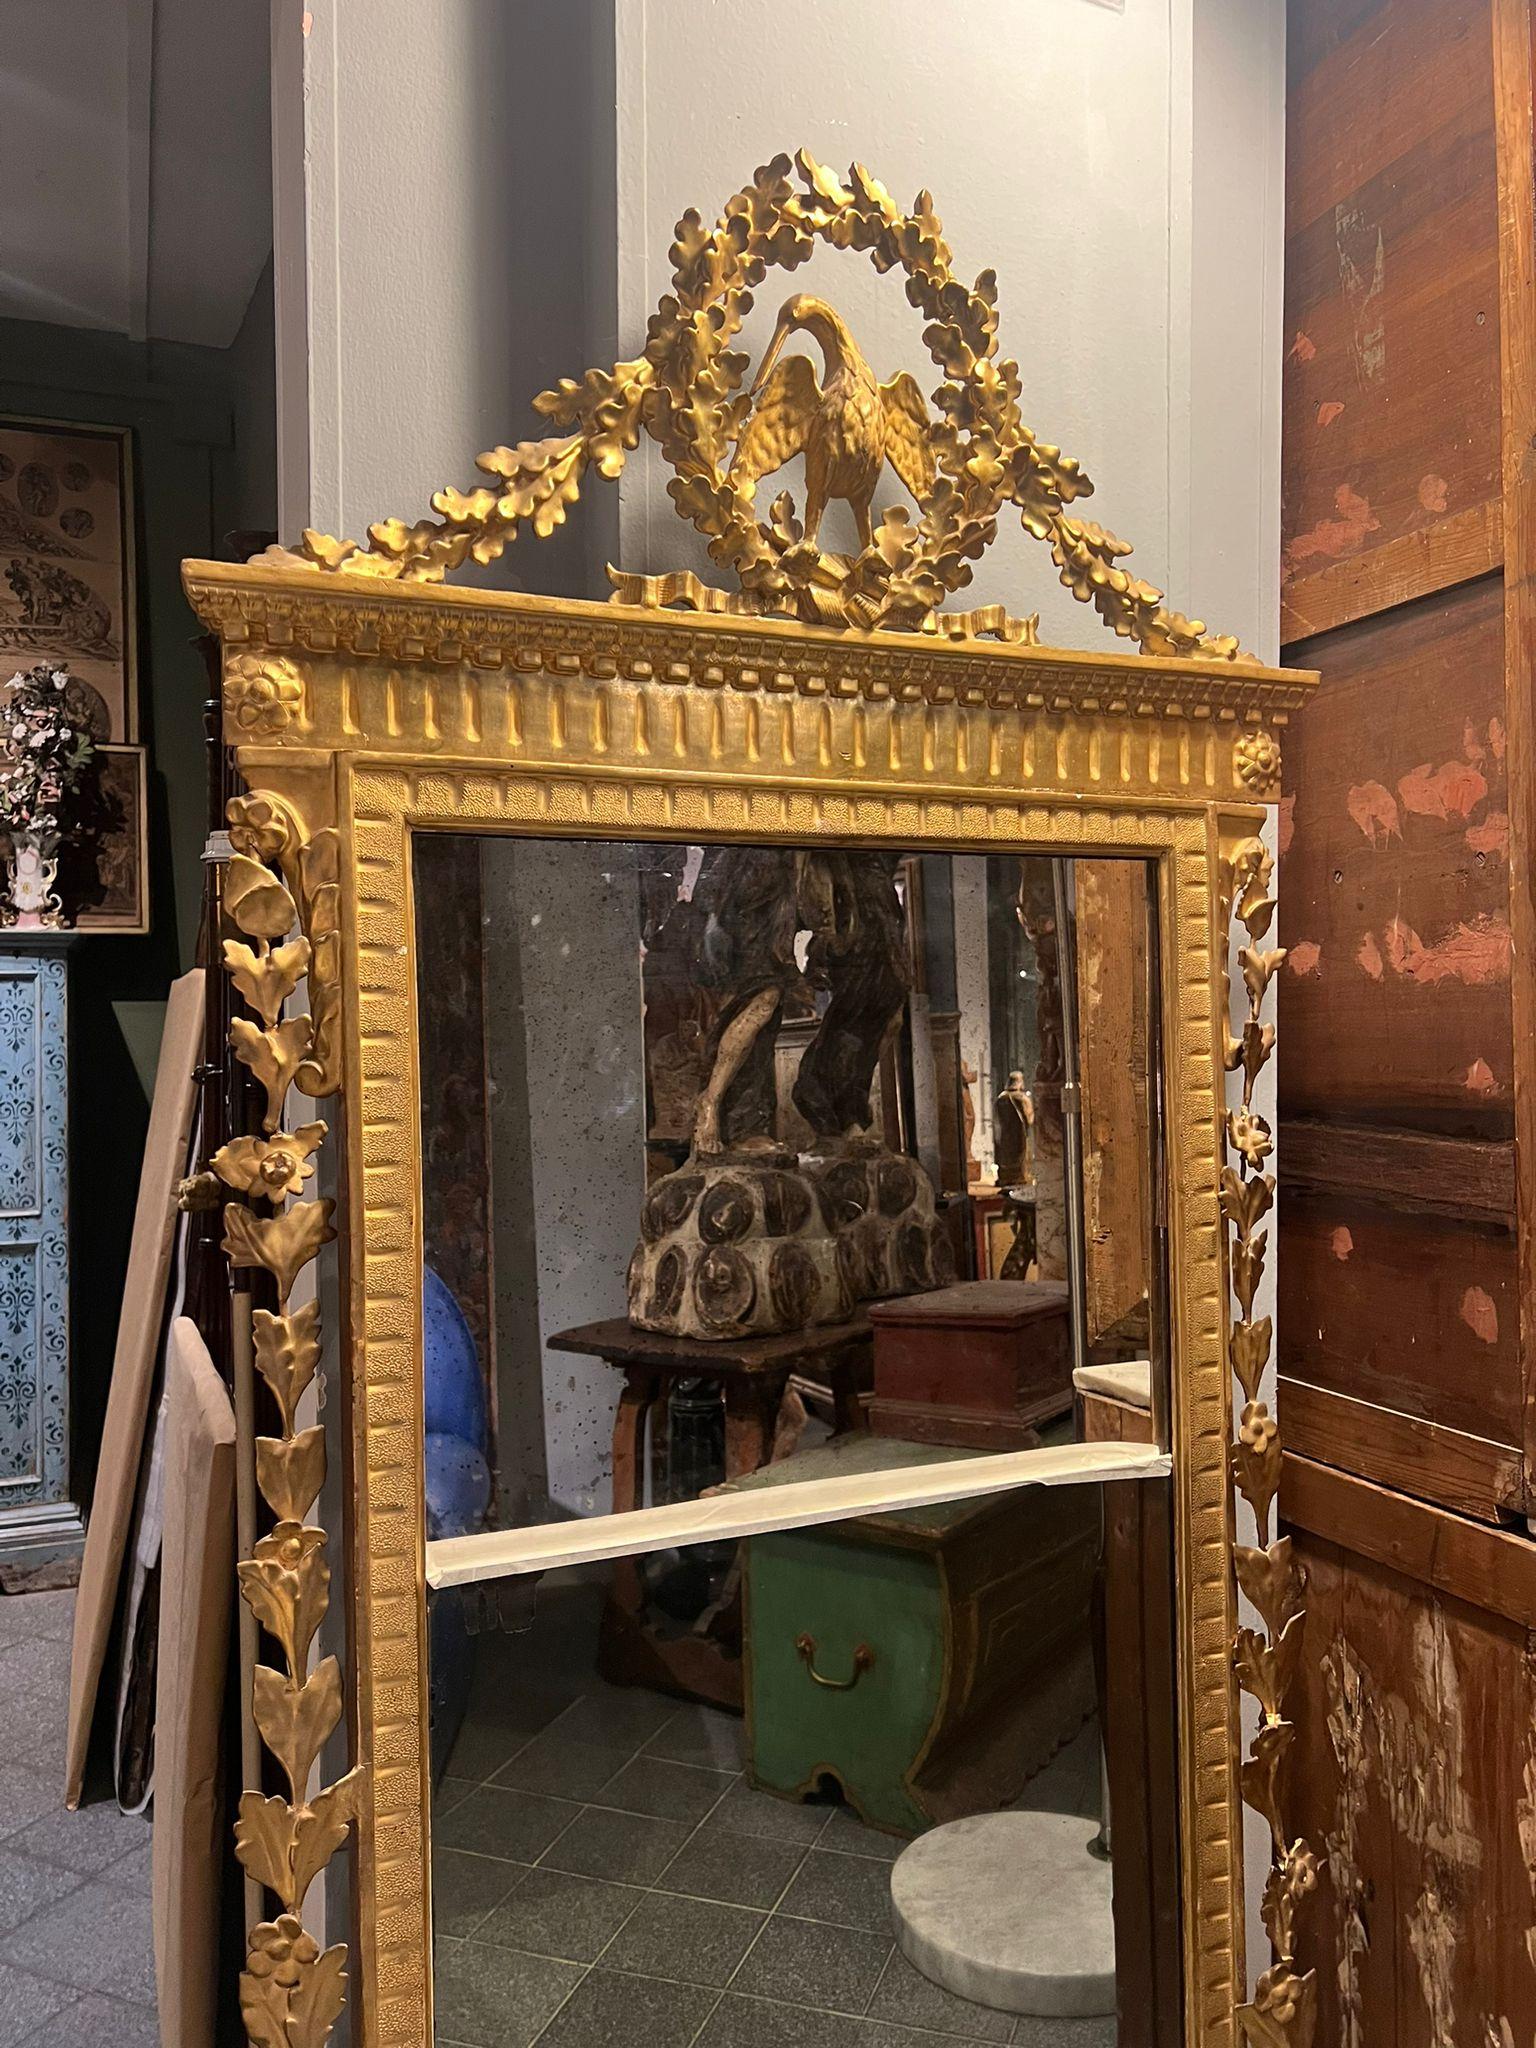 Ein schöner geschnitzter und vergoldeter Holzspiegel aus dem frühen 18. Jahrhundert, der ursprünglich aus Livorno stammt. 

Die Vergoldungen und Schnitzereien auf dem Cymatium sind sehr raffiniert. Eine Besonderheit ist der Spiegel, der in zwei